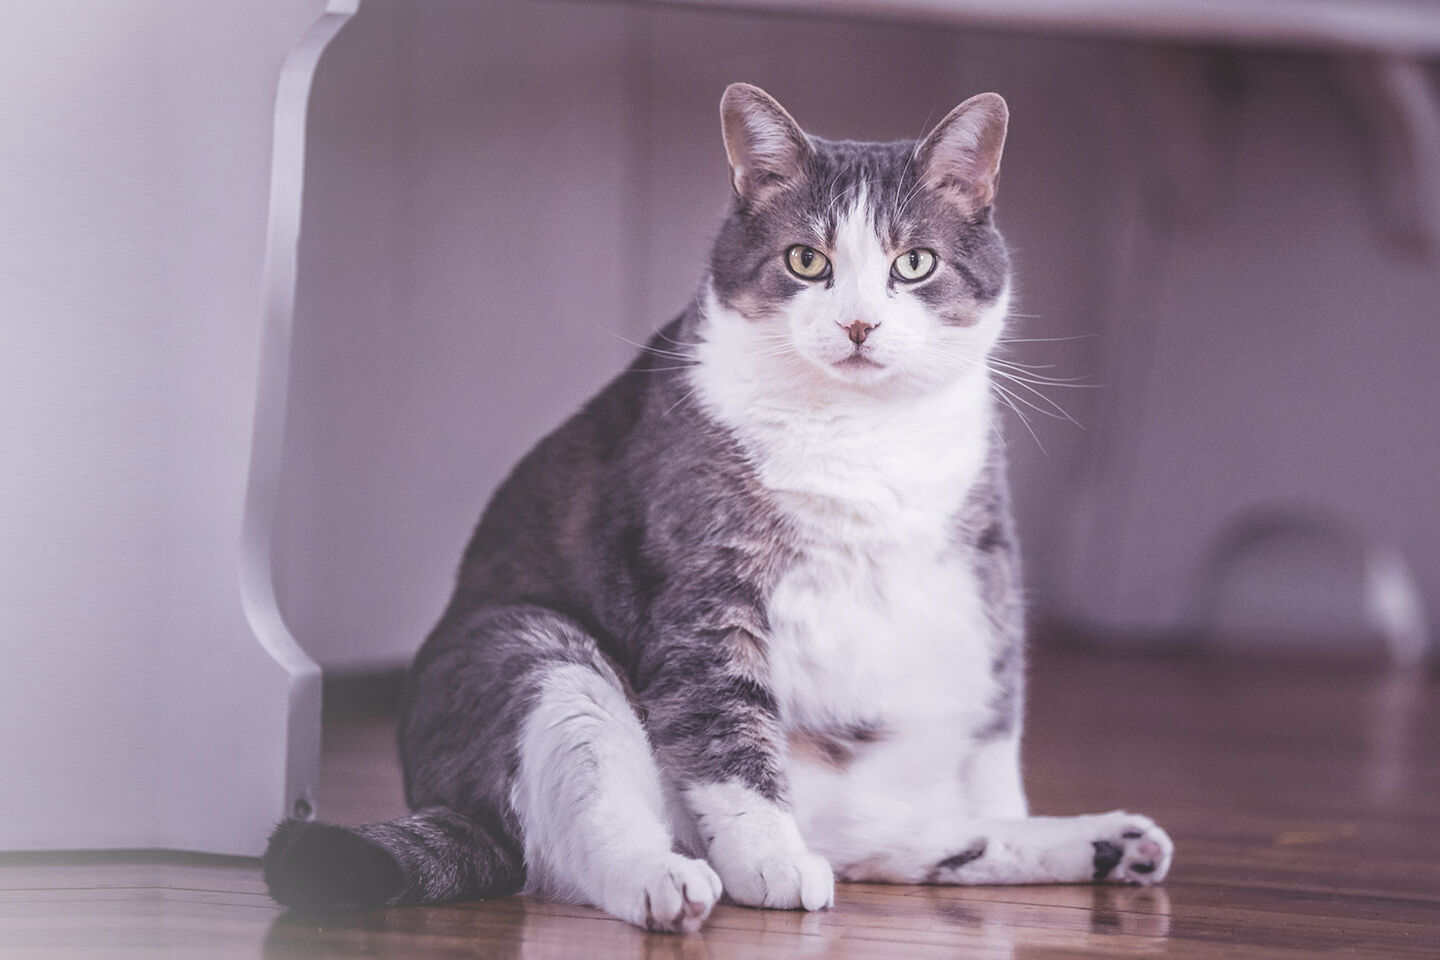 Katze mit starken Übergewicht sitzt auf dem Fußboden